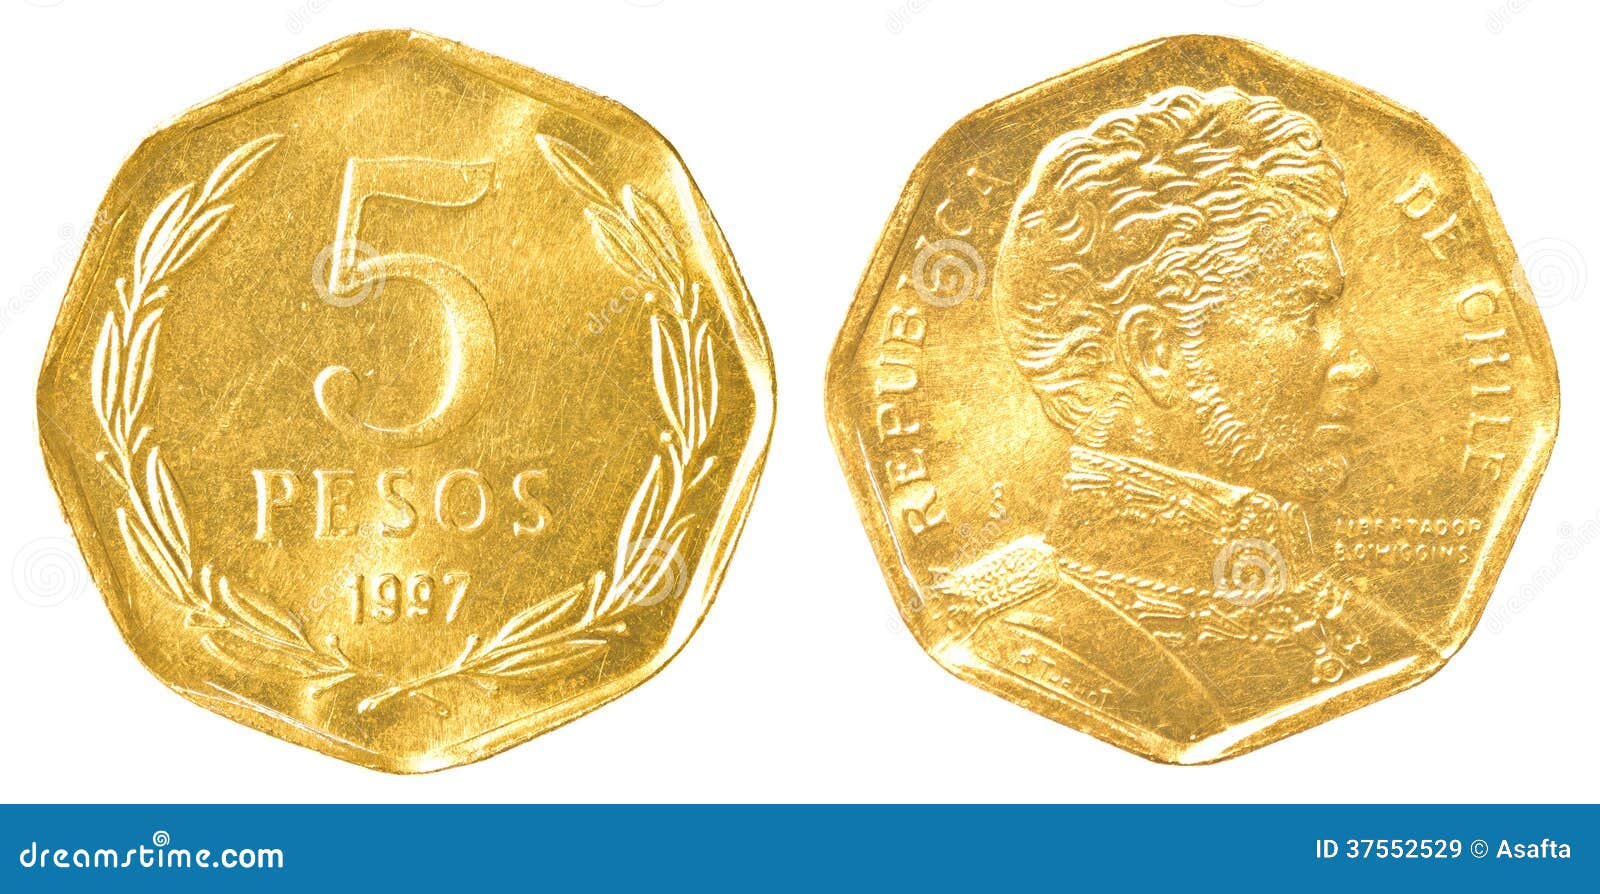 moneda-de-pesos-chilenos-37552529.jpg